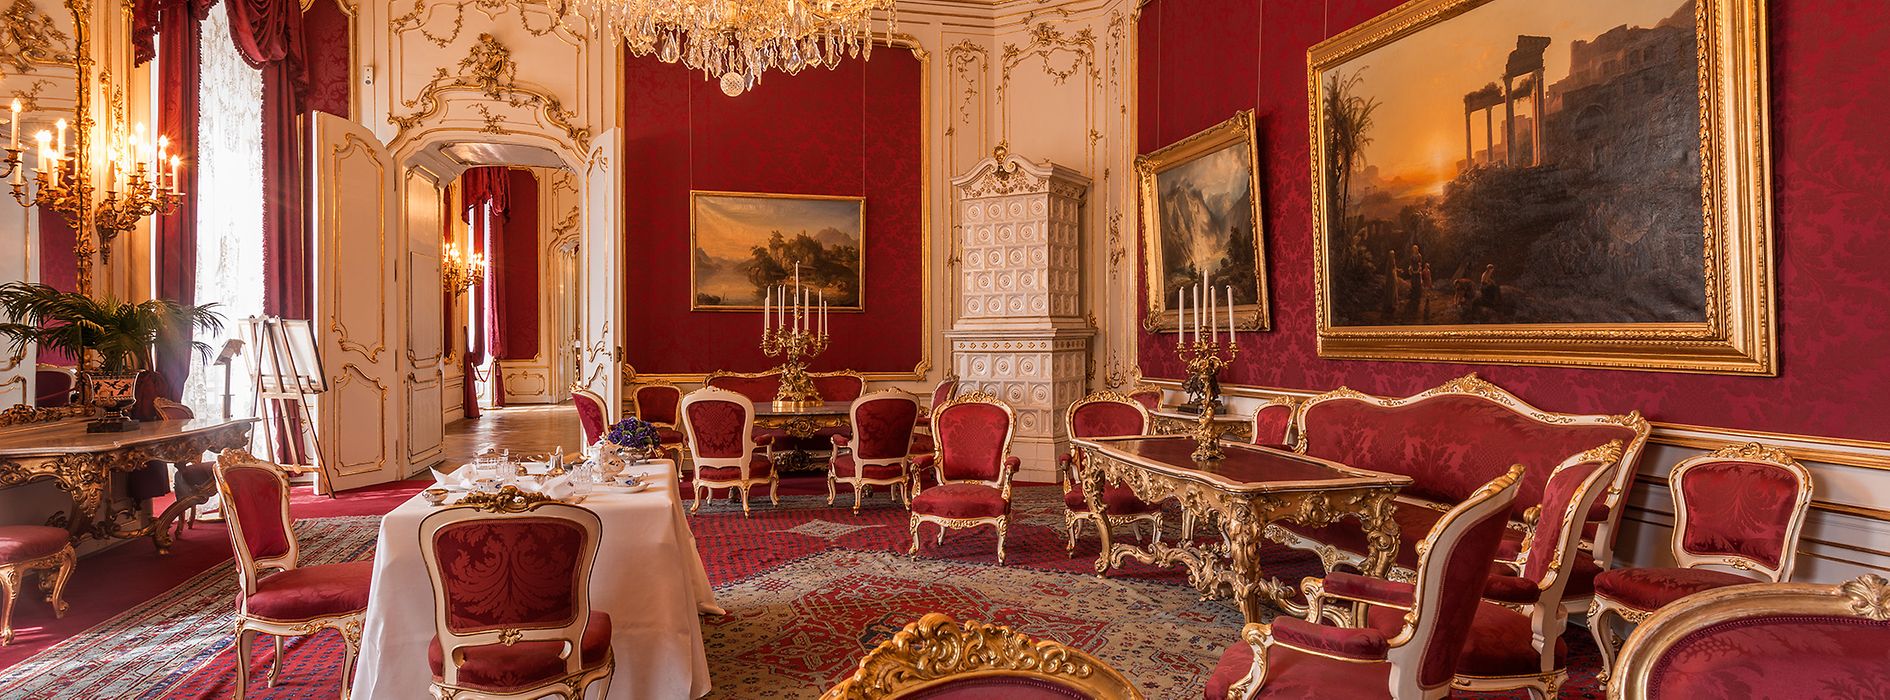 Großer Salon der Kaiserin Elisabeth